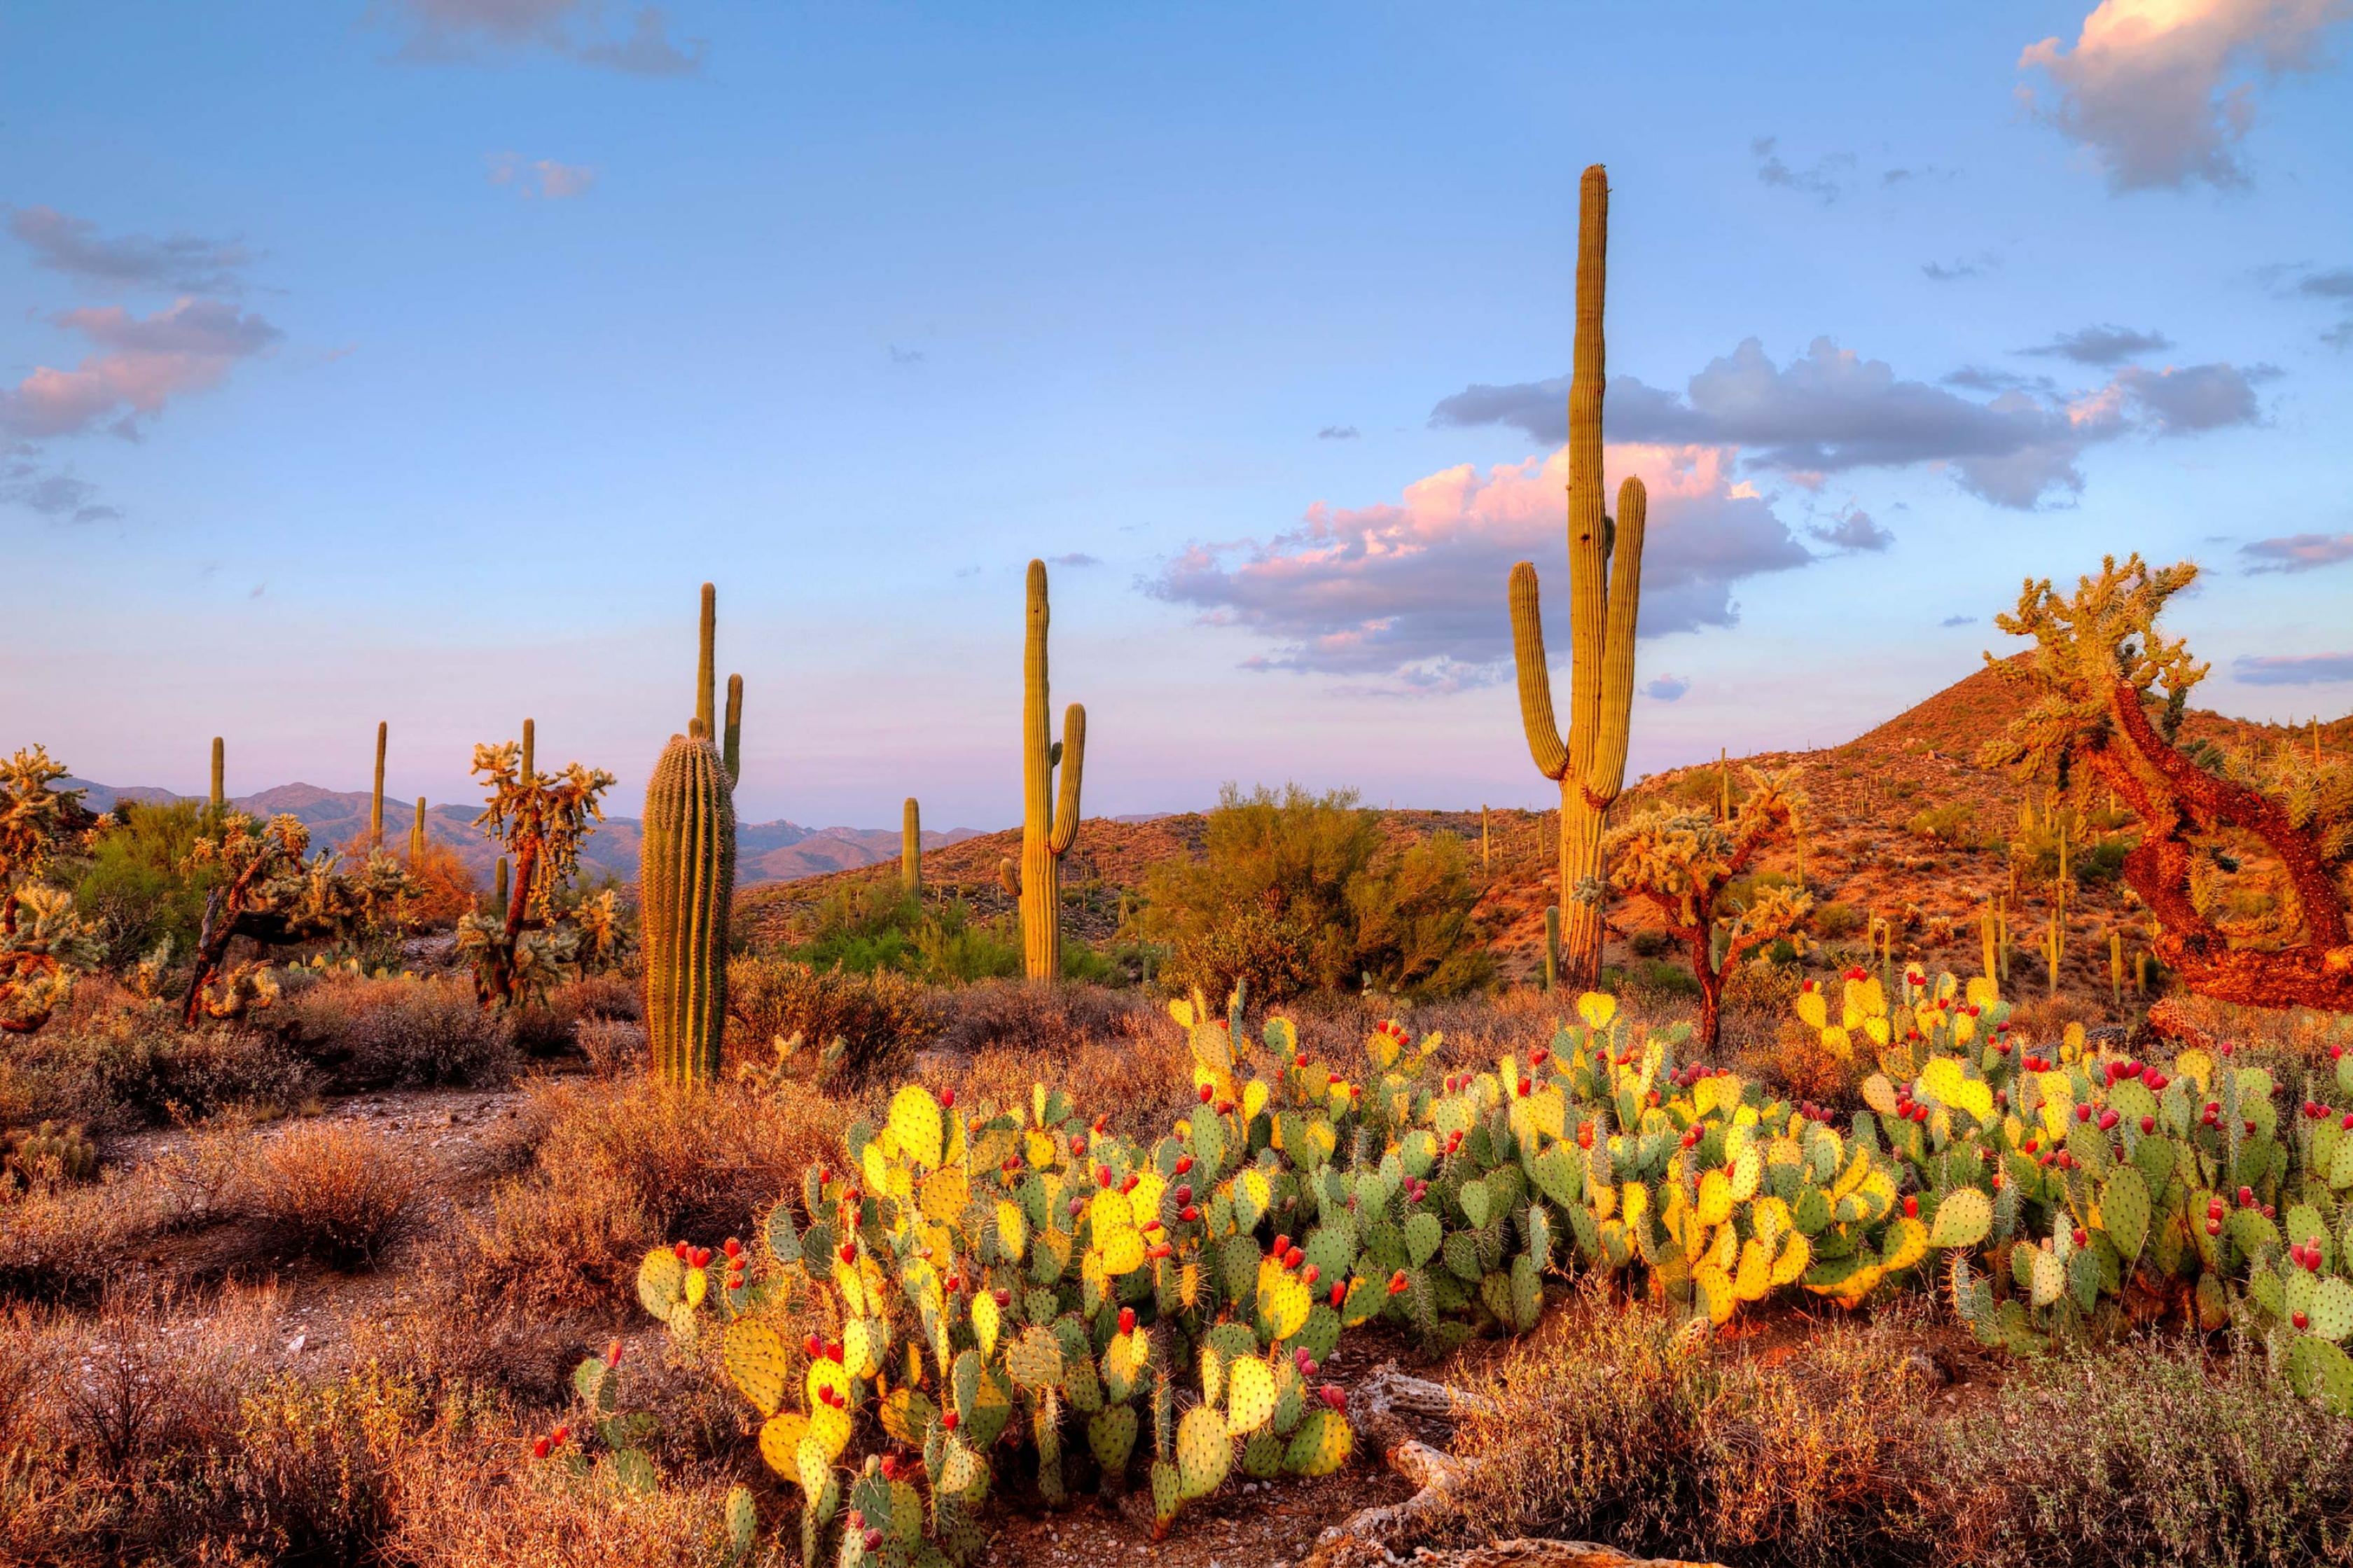 A grove of cactus, a regular site at Saguaro National Park.